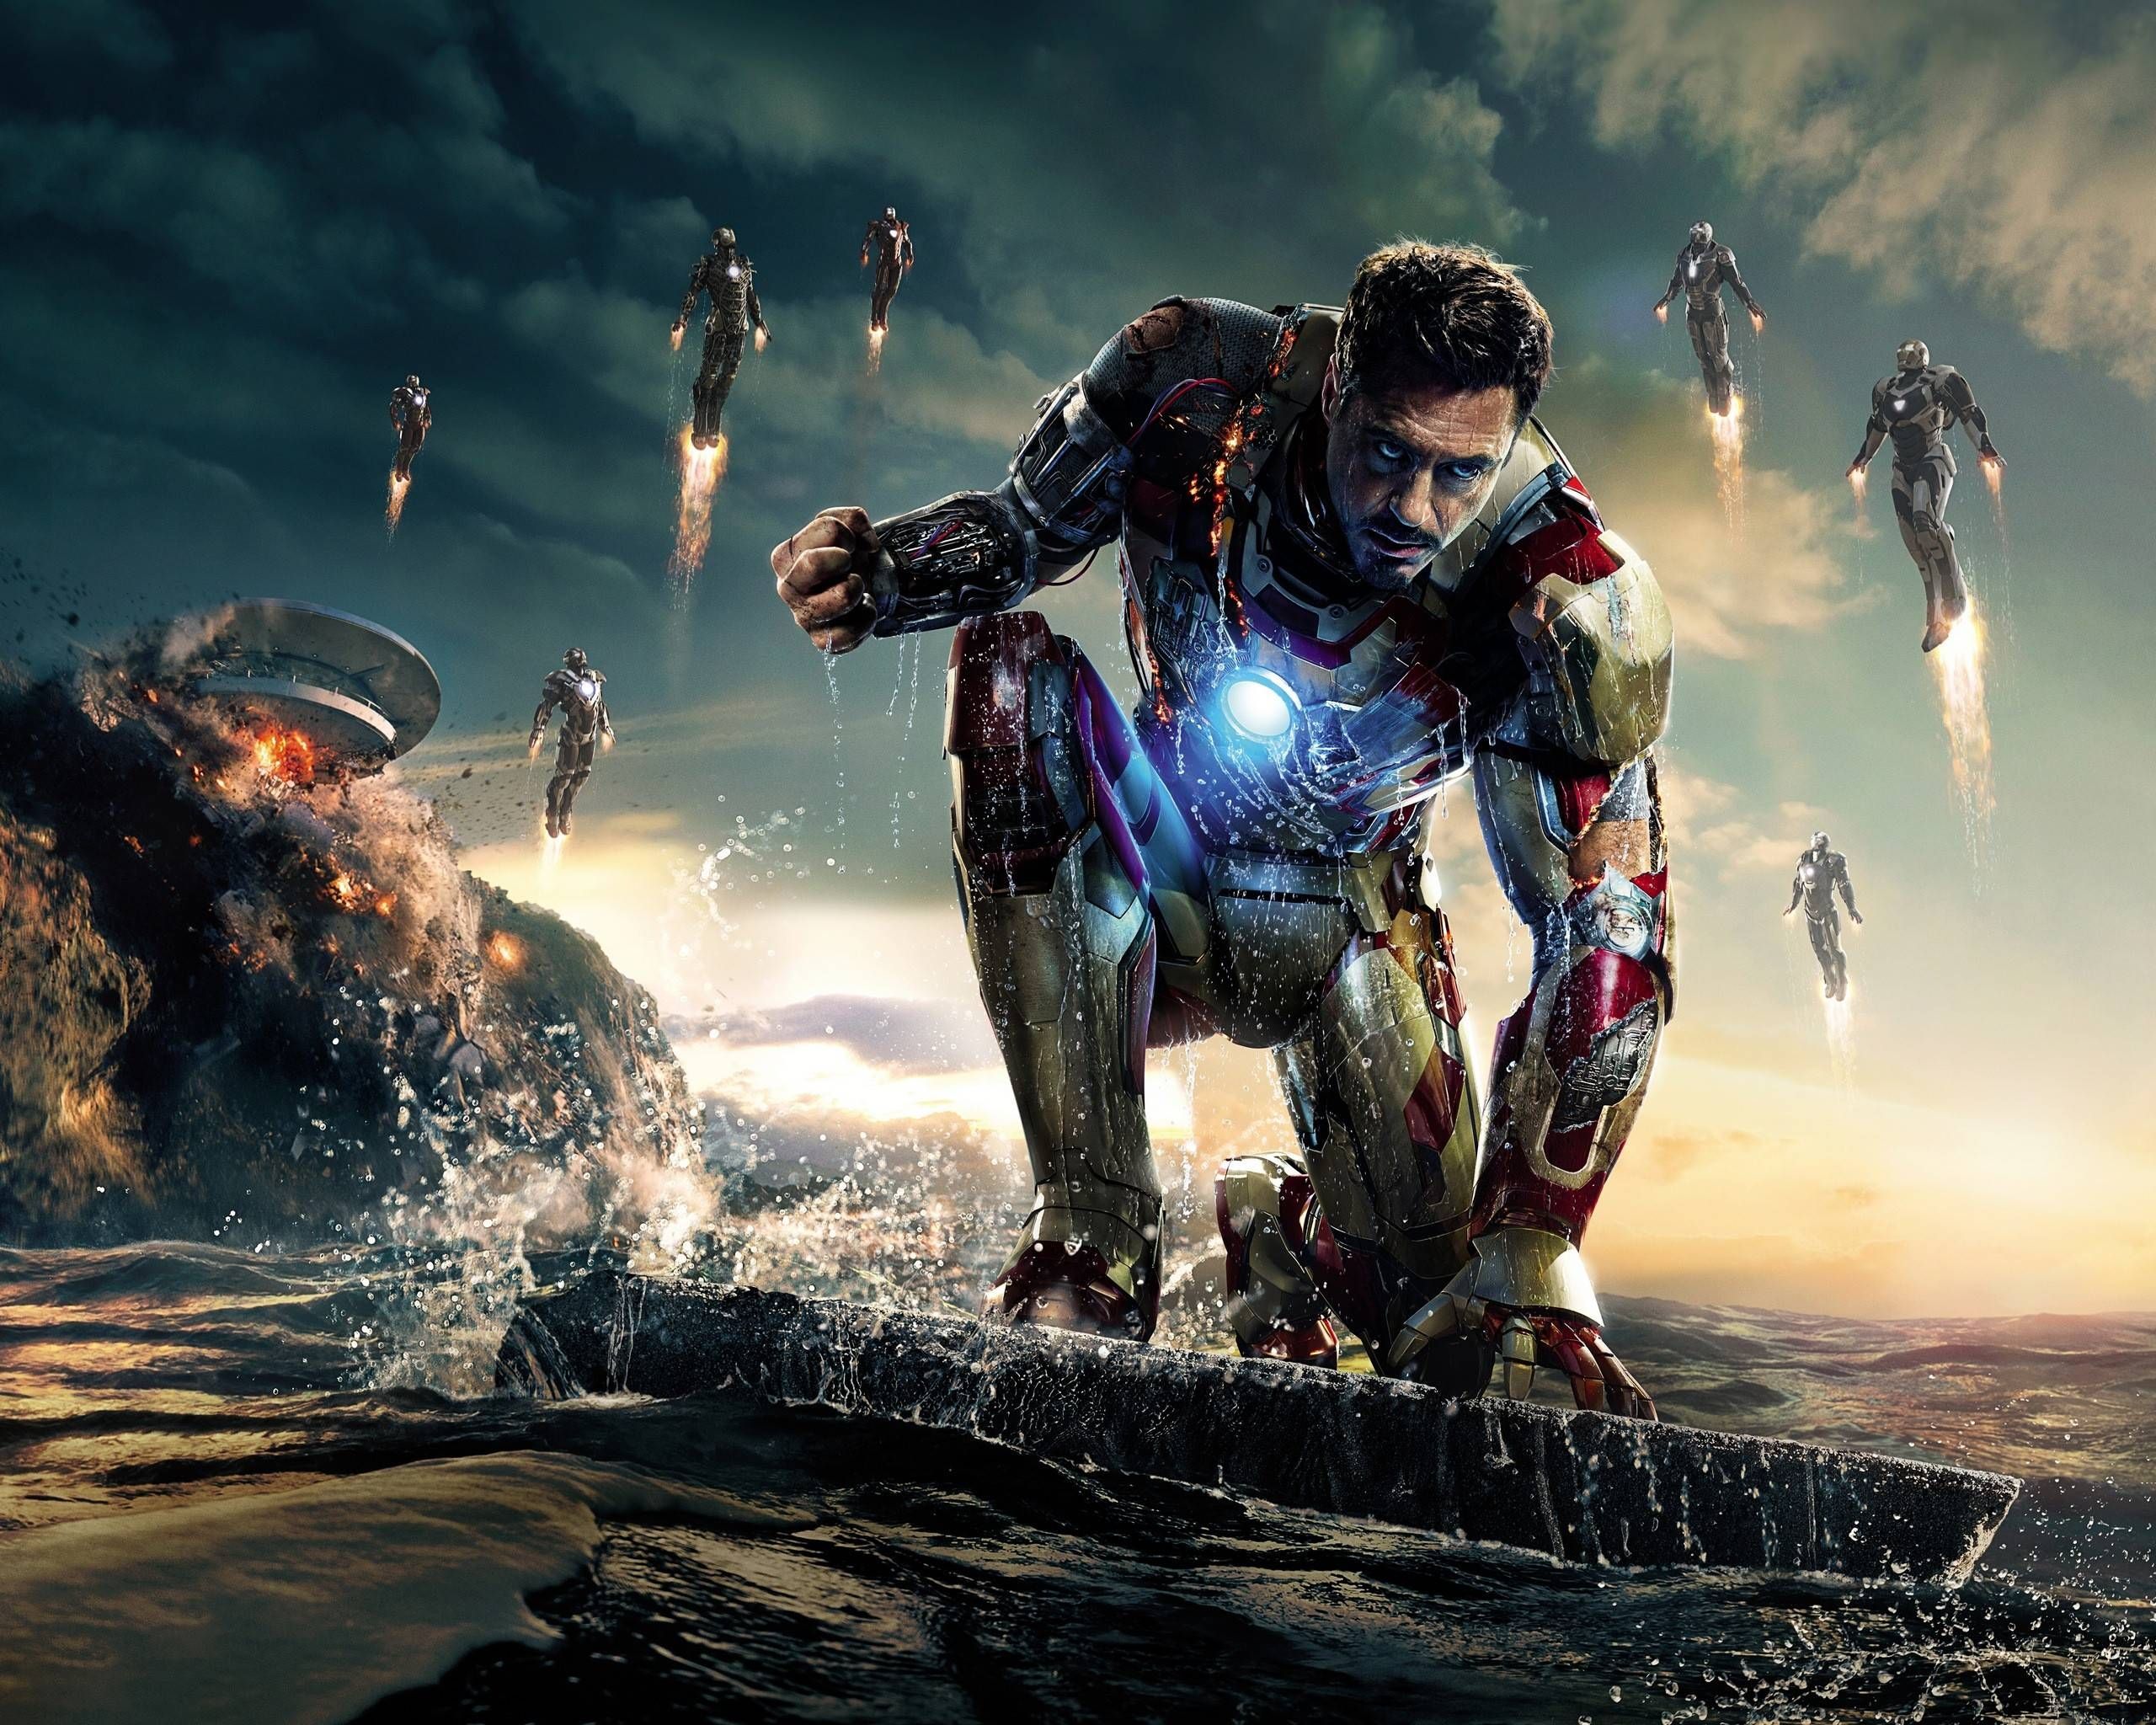 Iron Man là một trong những siêu anh hùng có sức ảnh hưởng lớn nhất trong MCU. Hãy cùng tìm hiểu và đắm mình trong thế giới của Tony Stark và Iron Man qua những bức ảnh đầy màu sắc và sinh động.